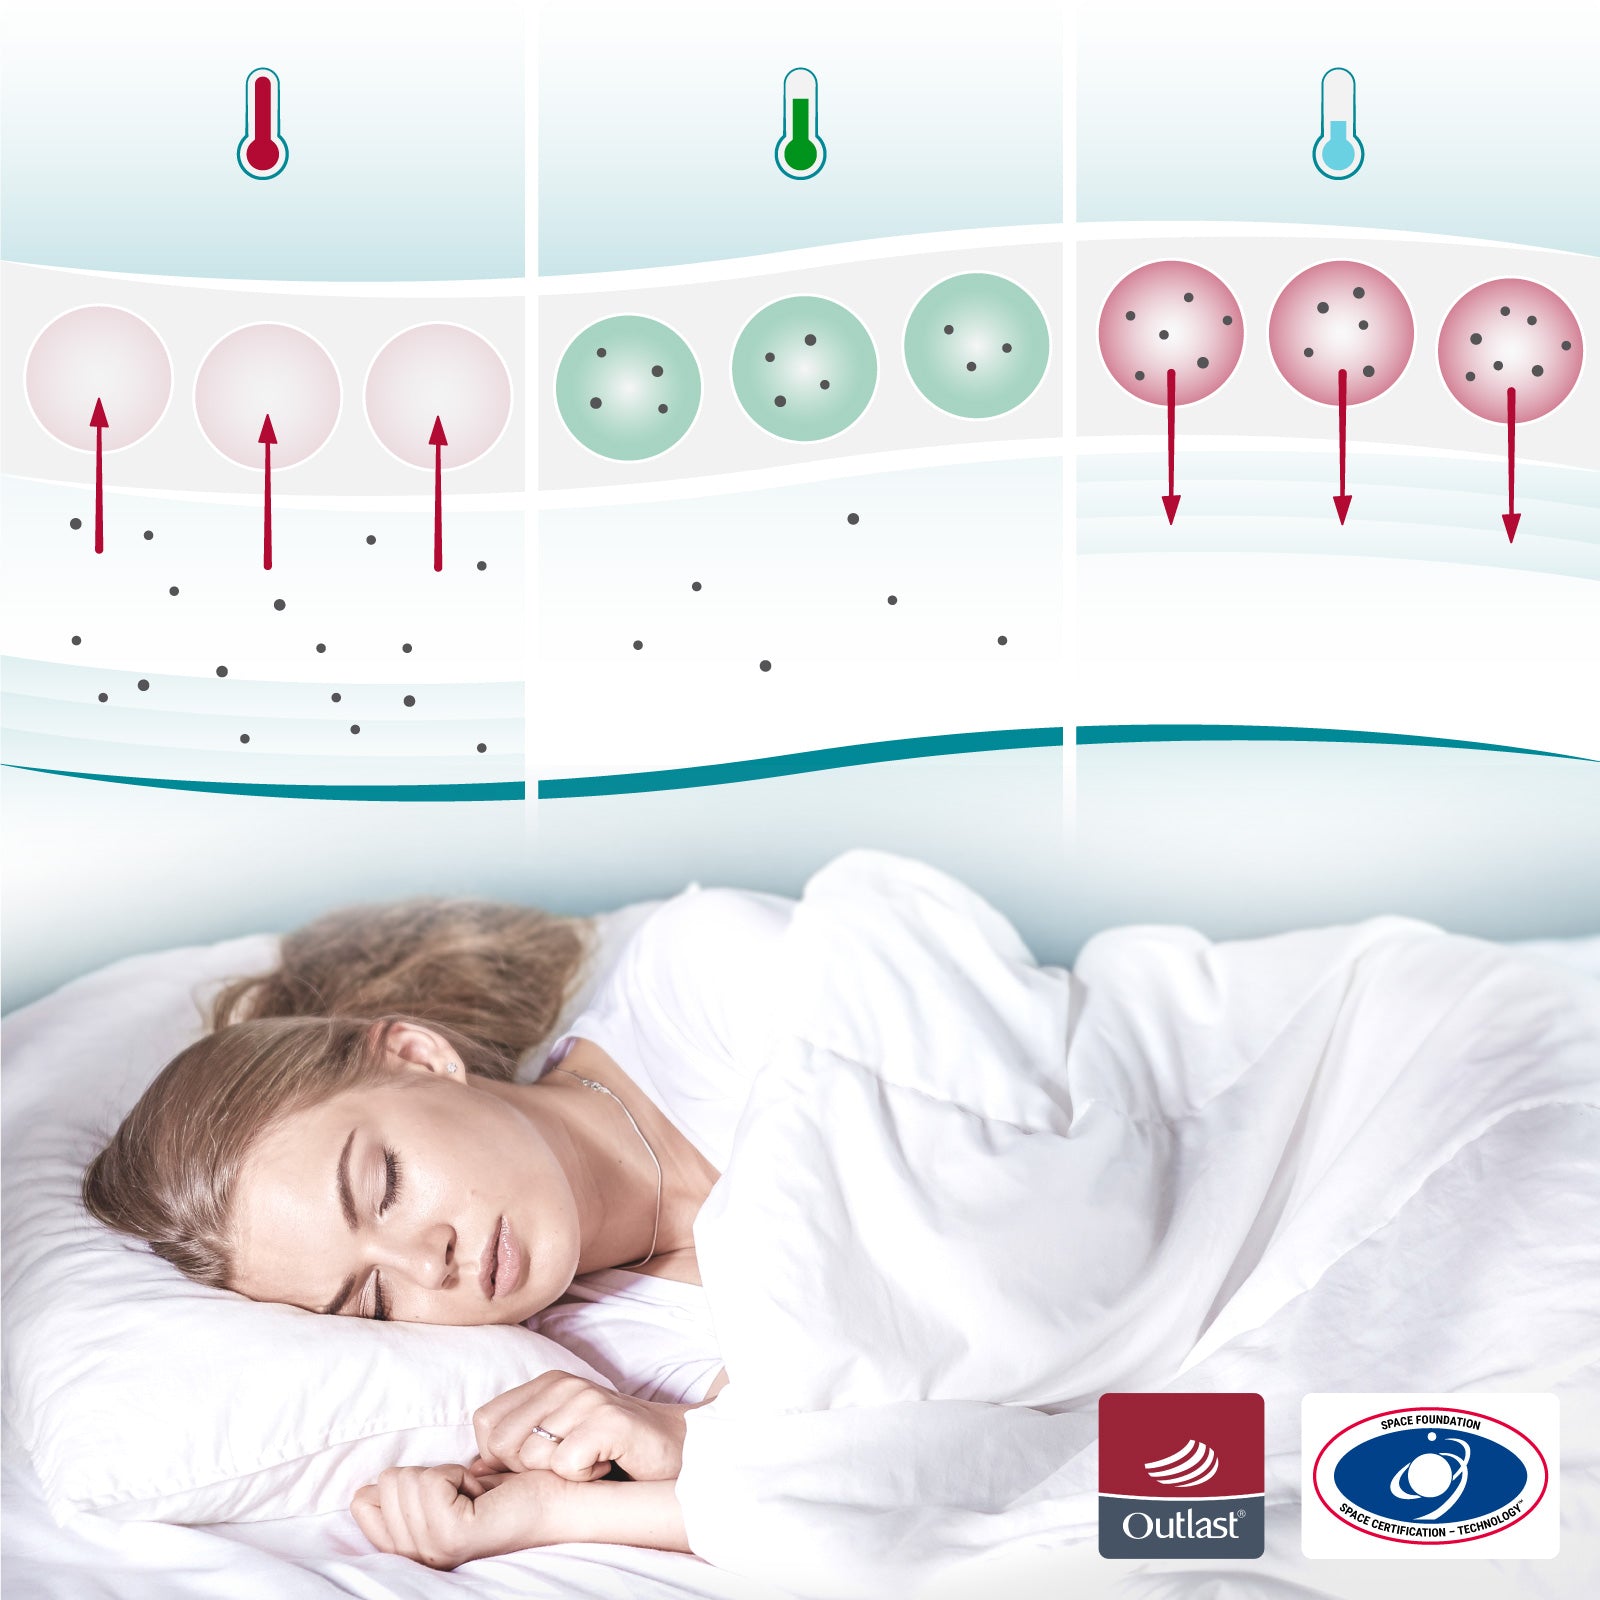 Matratzenauflage mit Kühleffekt - COOL.MOMENTS - Ruhiger Schlaf durch ideale Schlaftemperatur